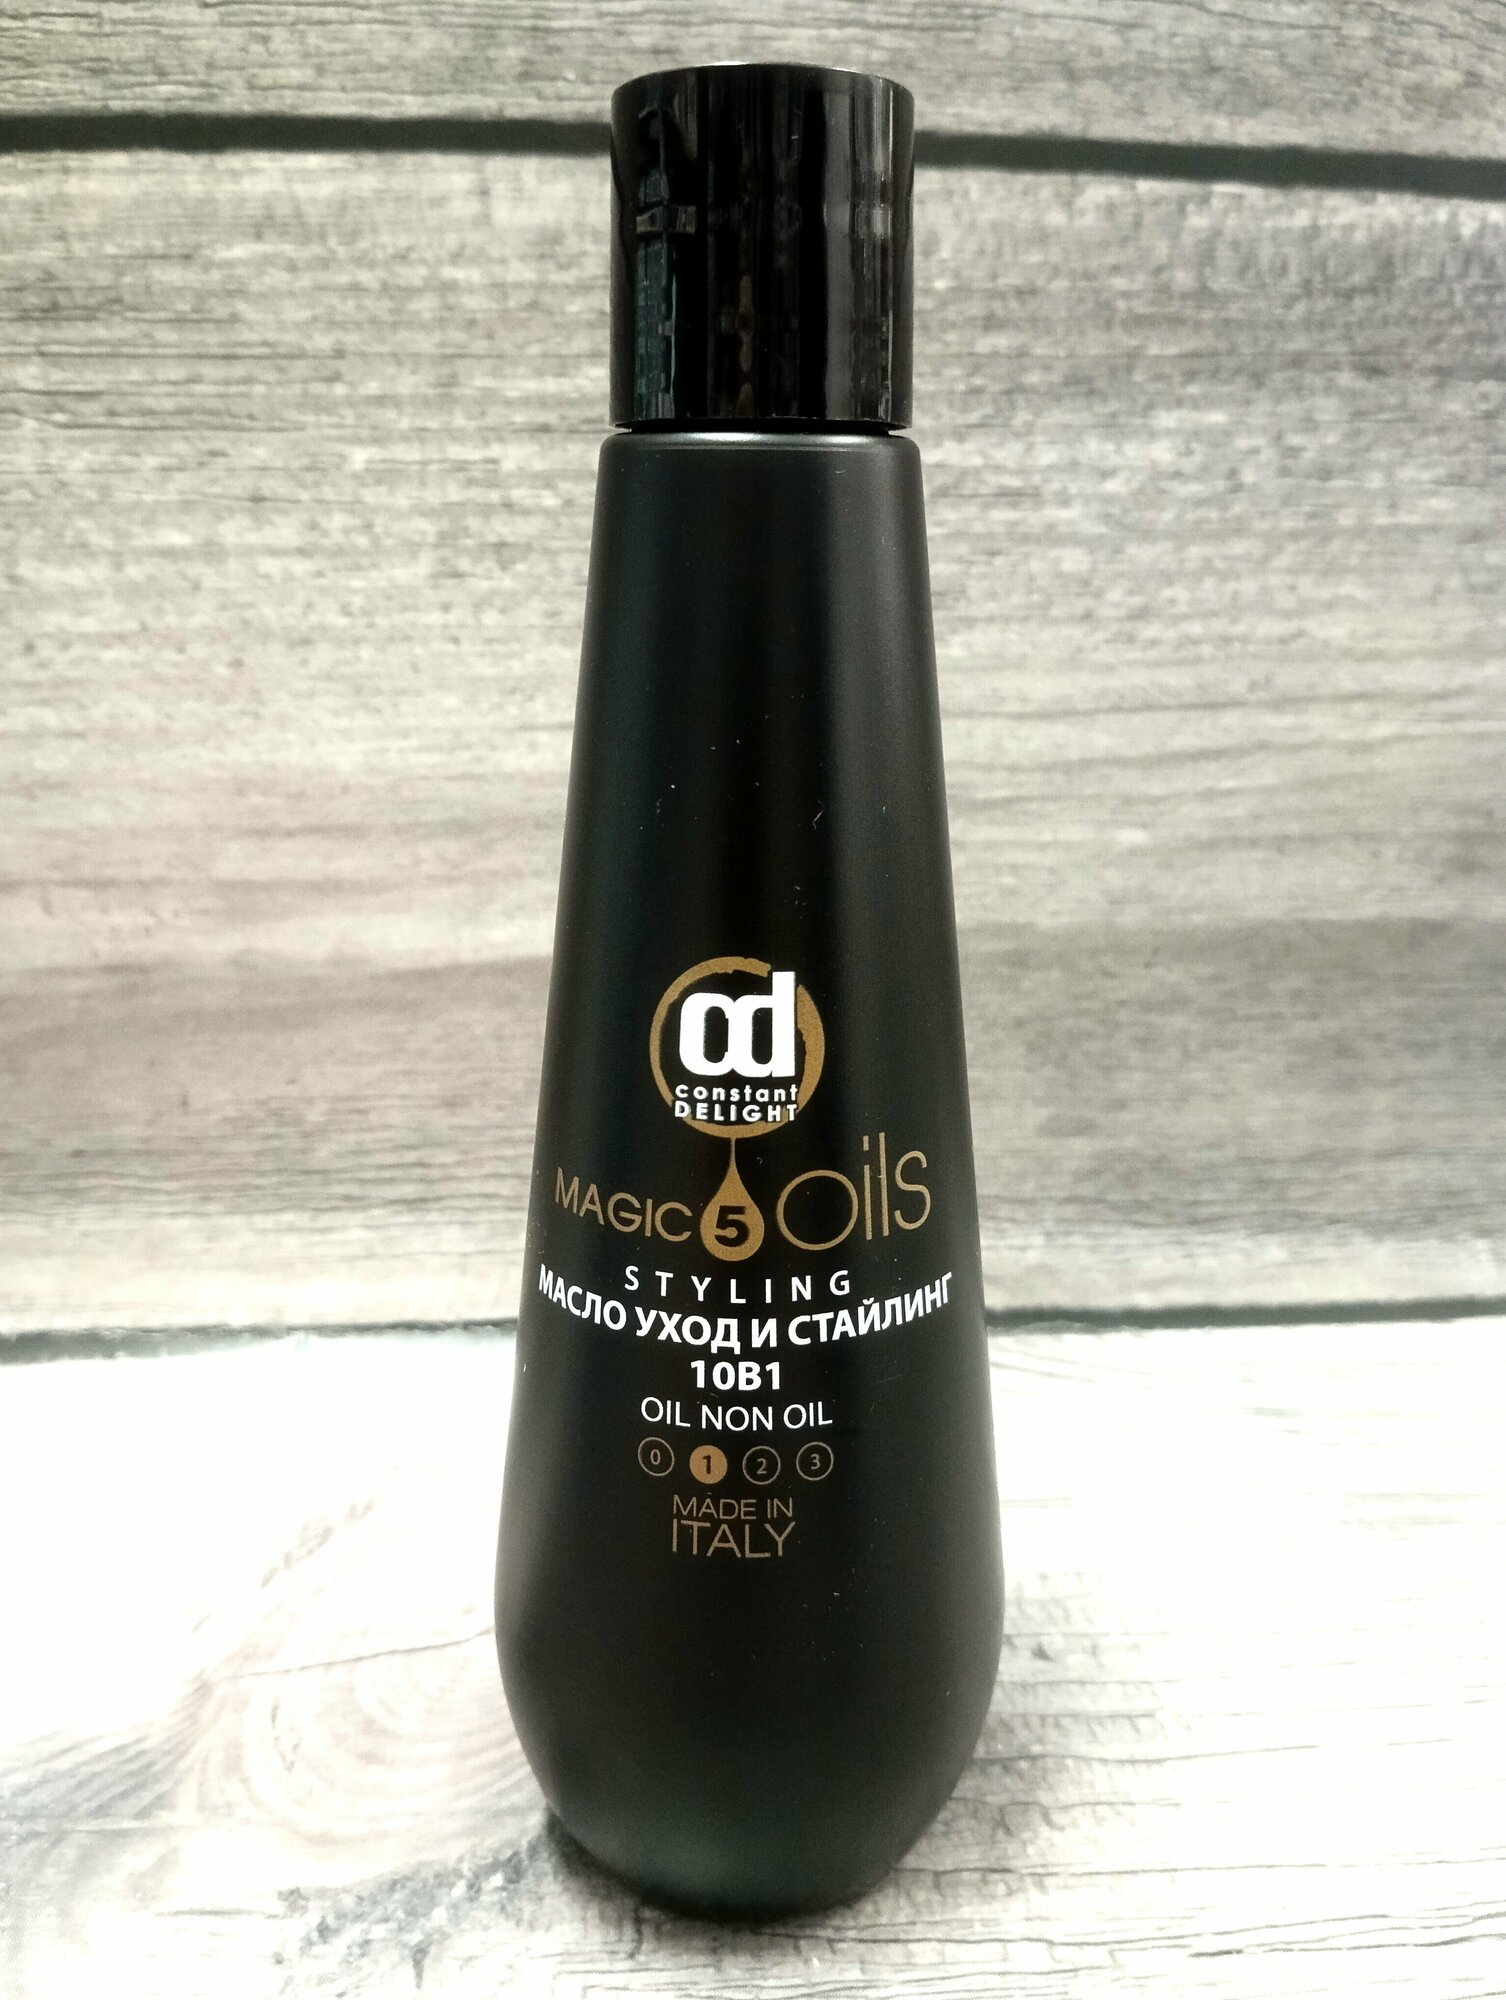 Constant Delight 5 Magic Oils масло Формула 10 в 1 для волос, 200 мл, бутылка